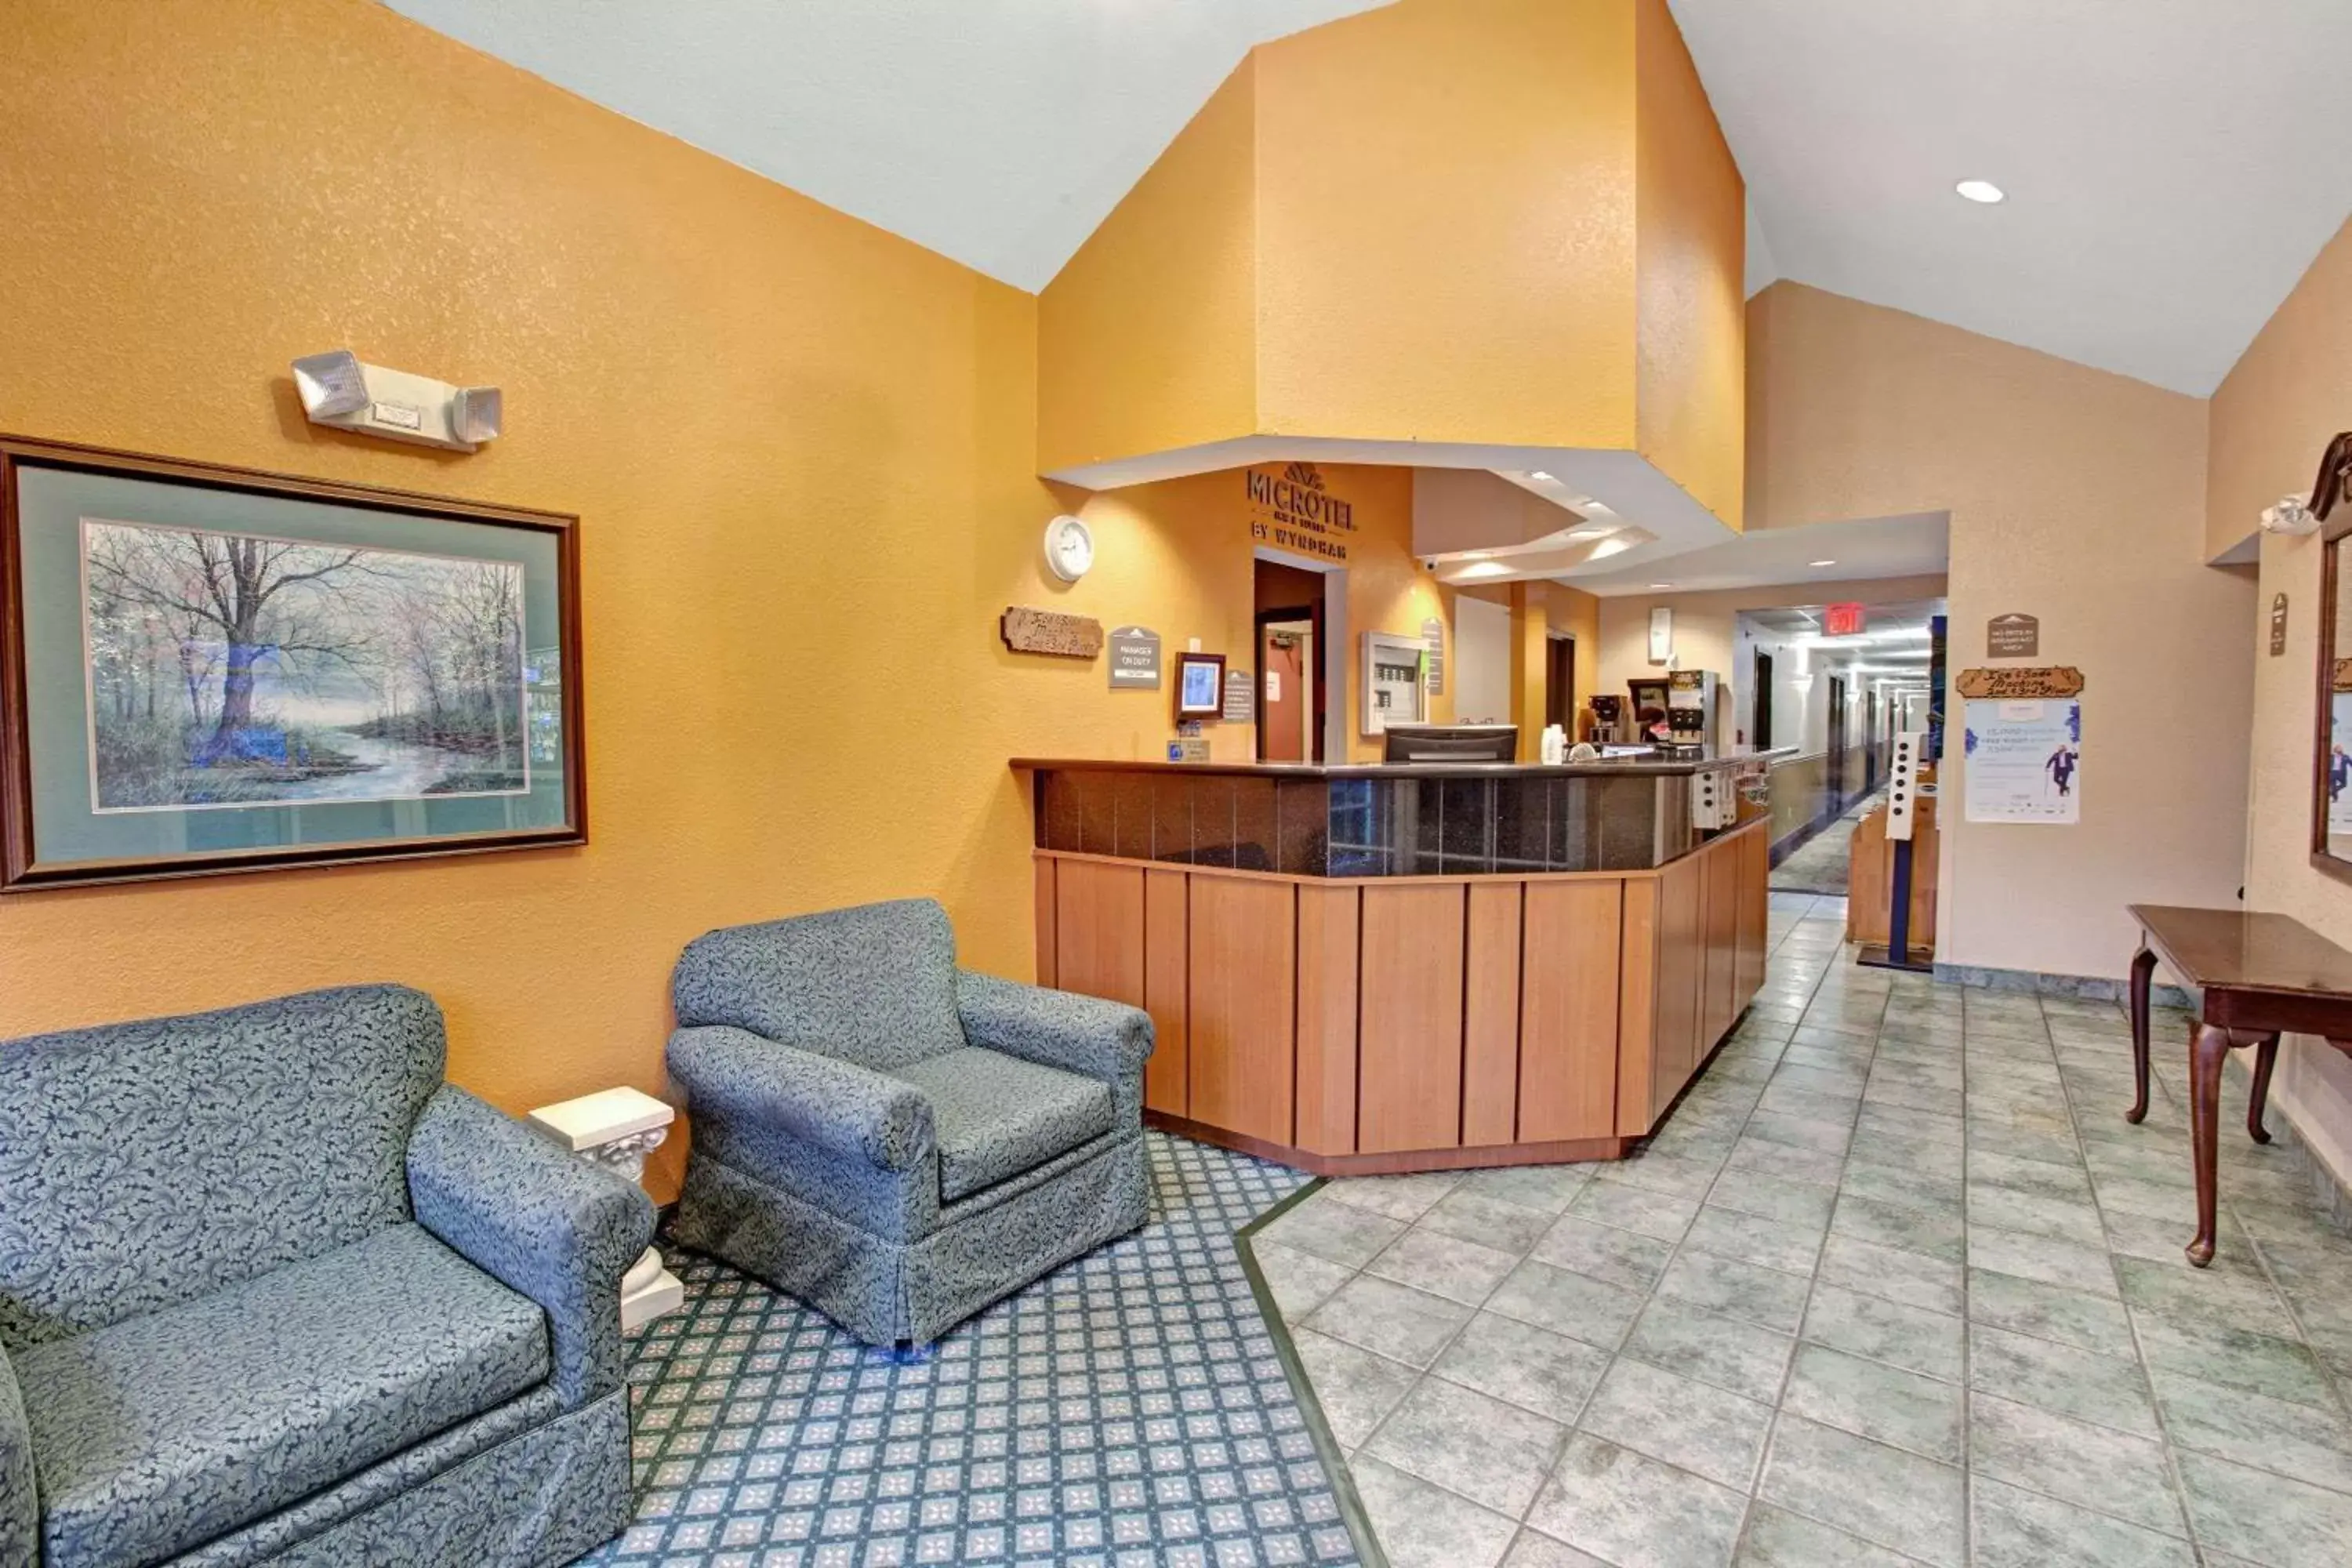 Lobby or reception, Lobby/Reception in Microtel Inn & Suites by Wyndham Gatlinburg